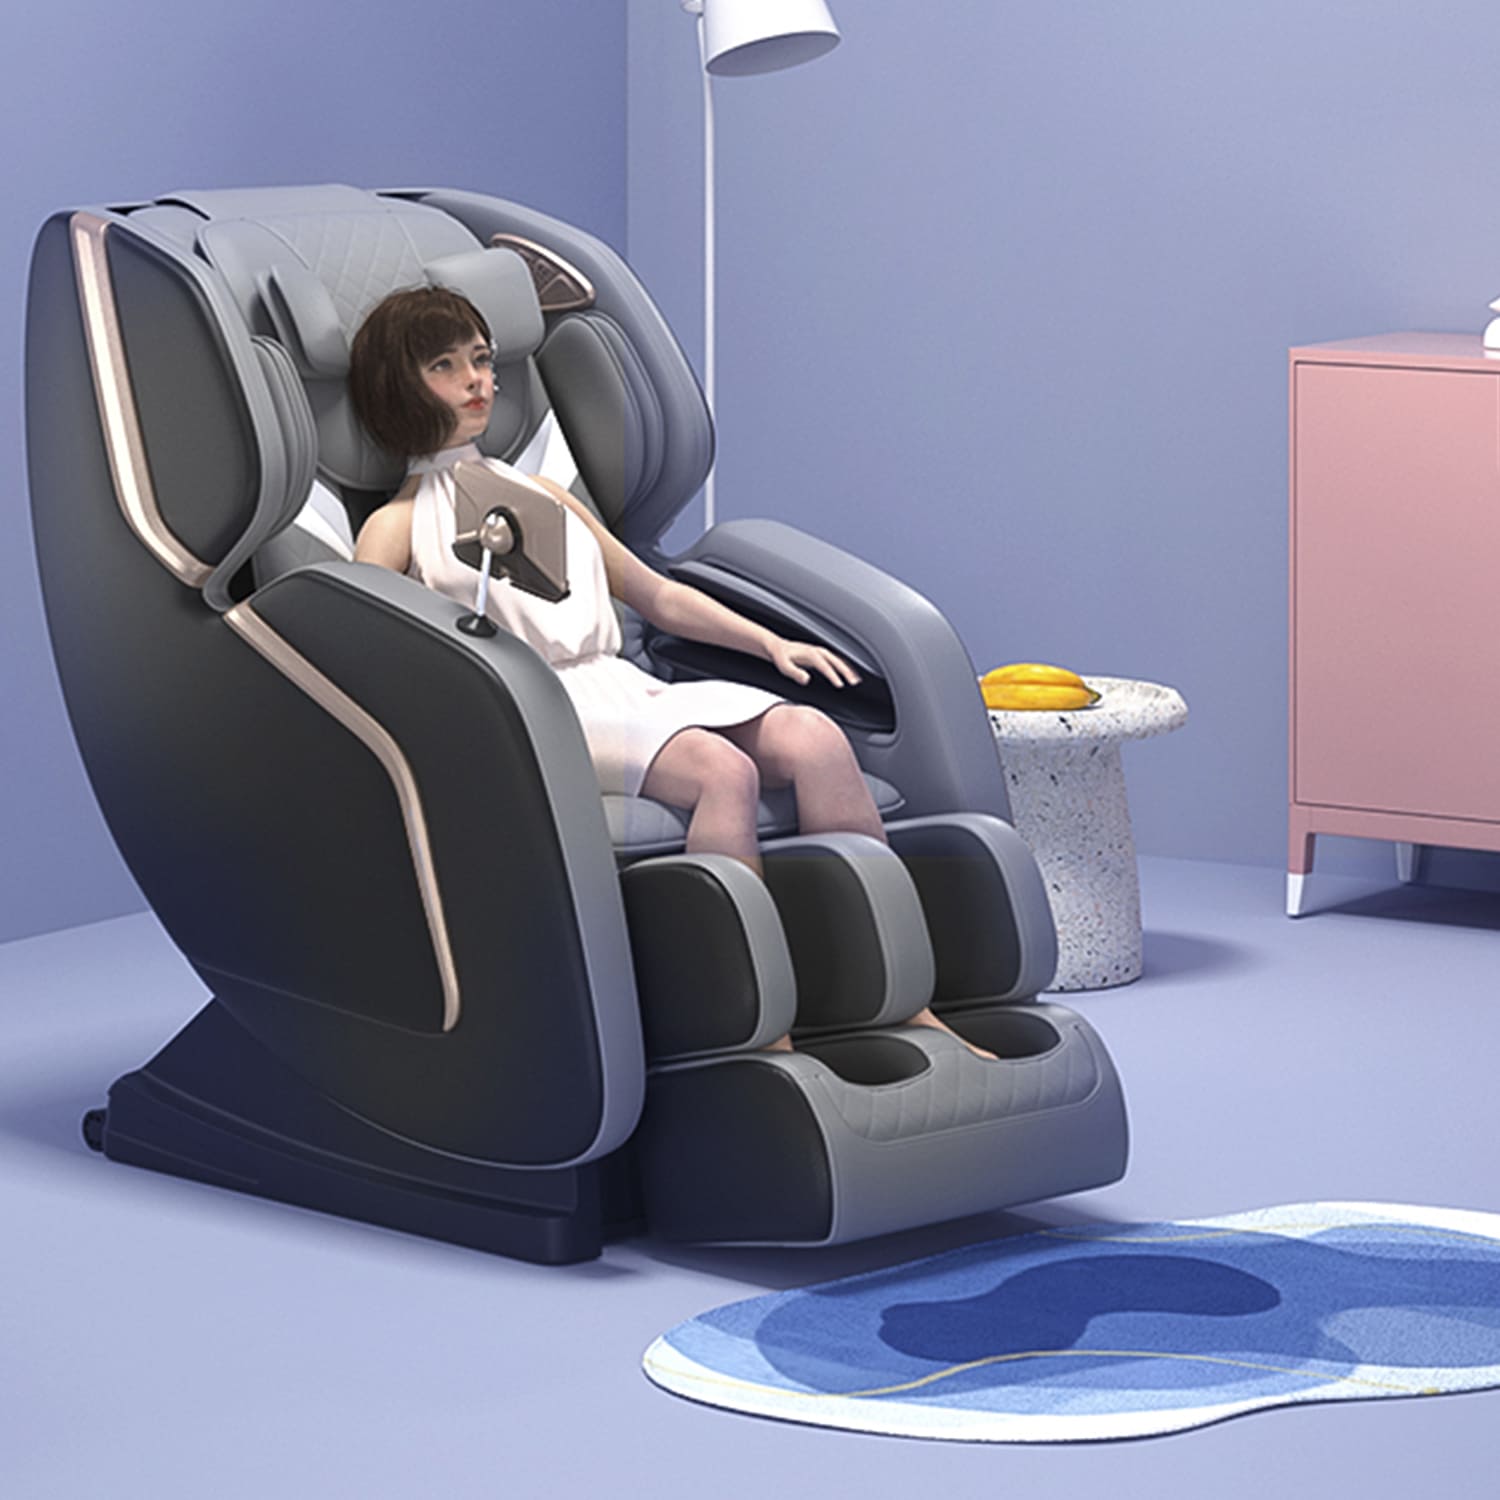 Luxurious Automatic Body Massage Chairs